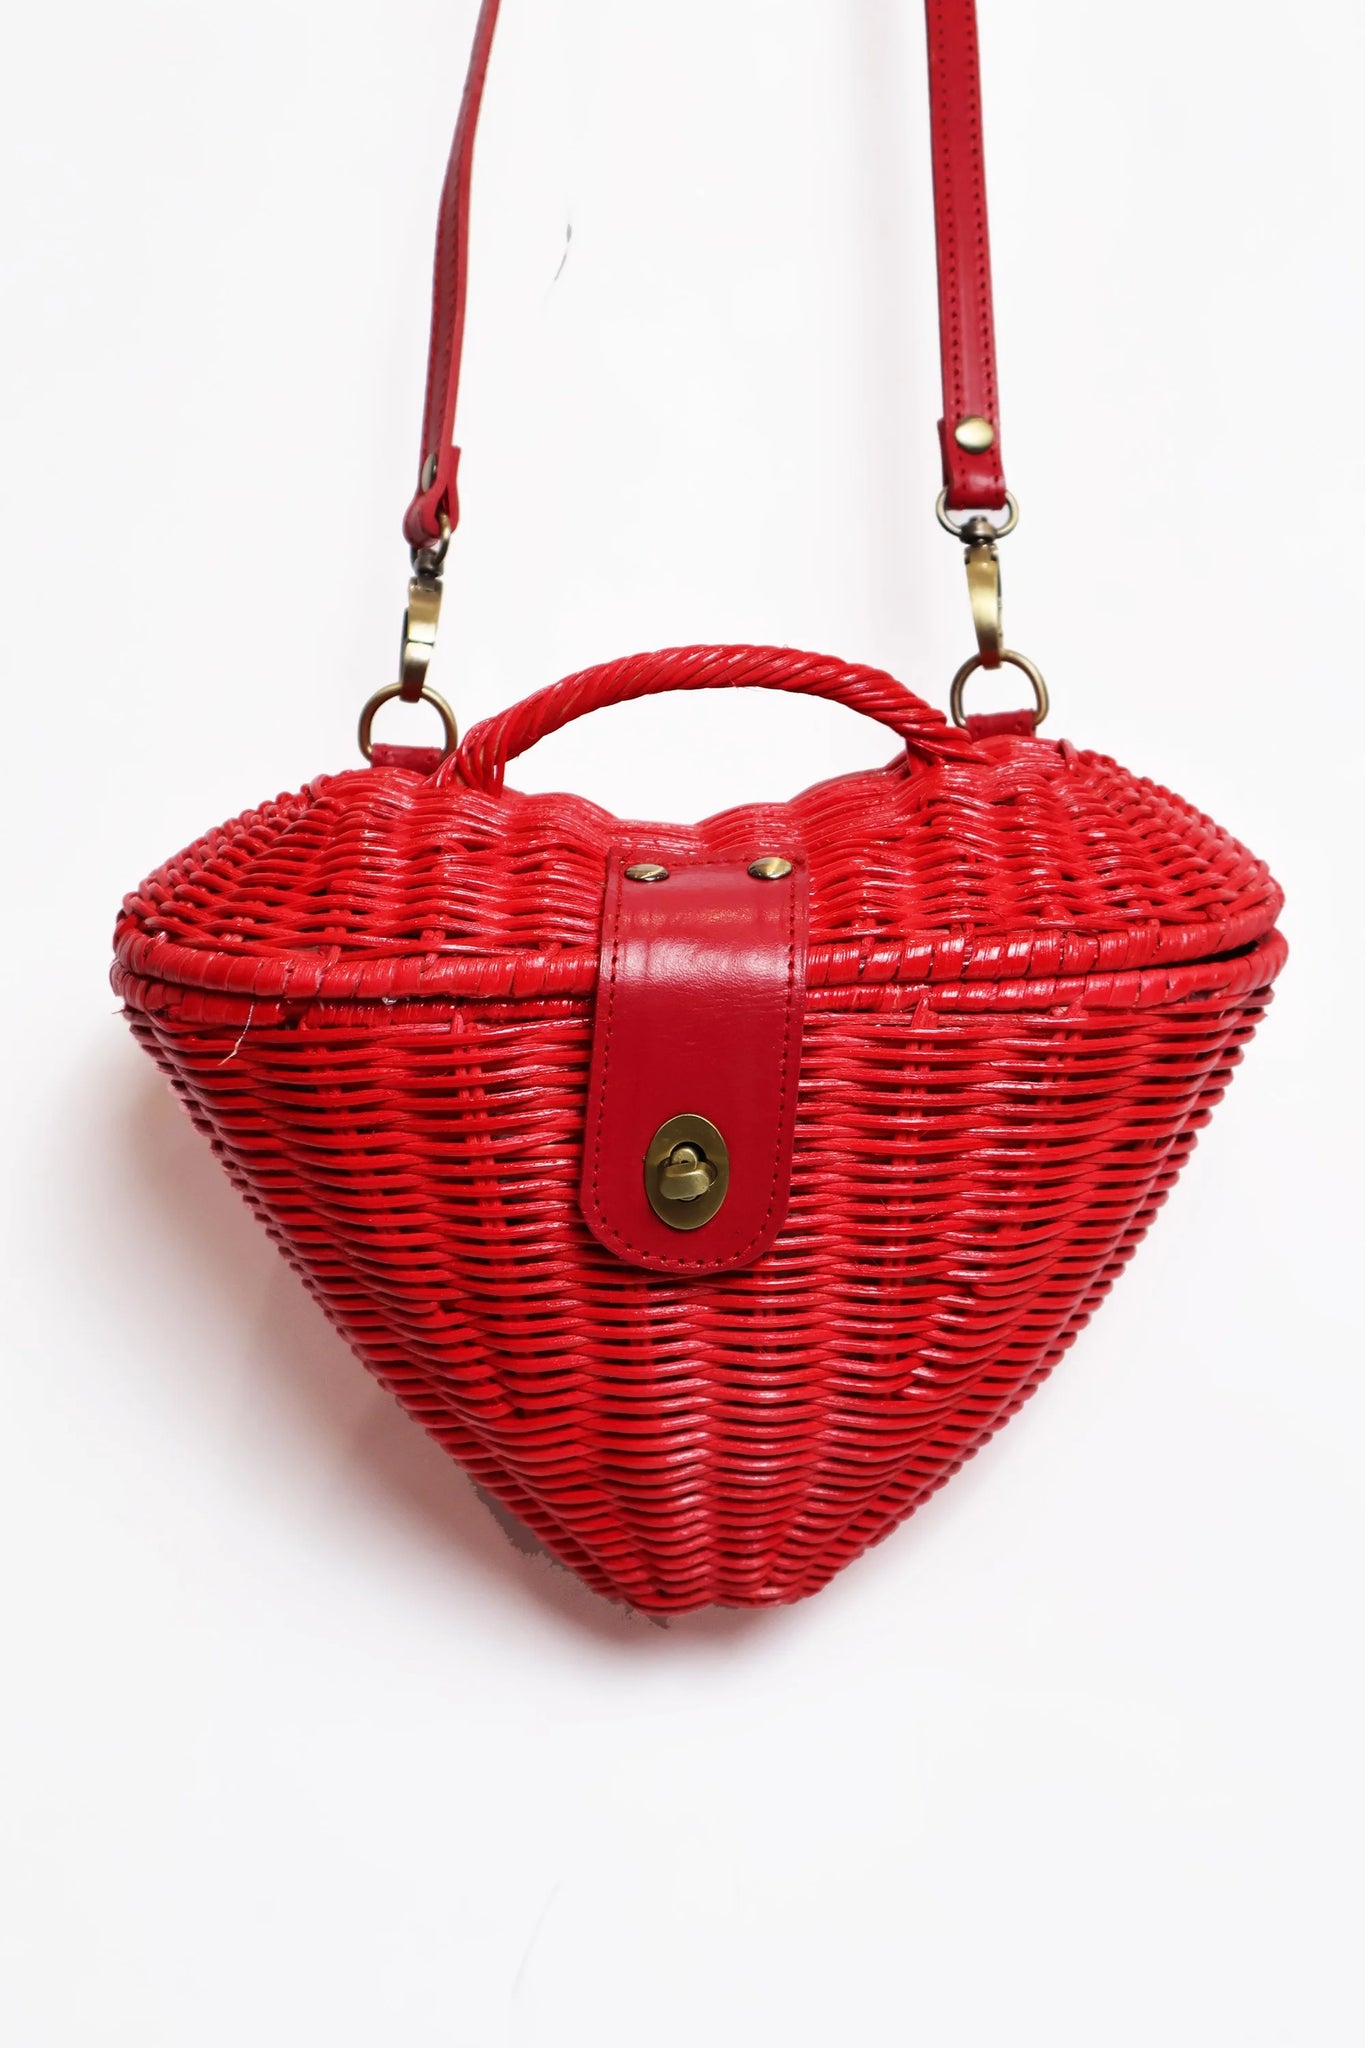 Buy Vintage Wicker Leather Purse/ 1950s-60s Bag/ Vintage Purse/ Woven  Basket Purse/ Vintage Bag Woman/ Vintage Handbag/ Spring Summer Bag Online  in India - Etsy